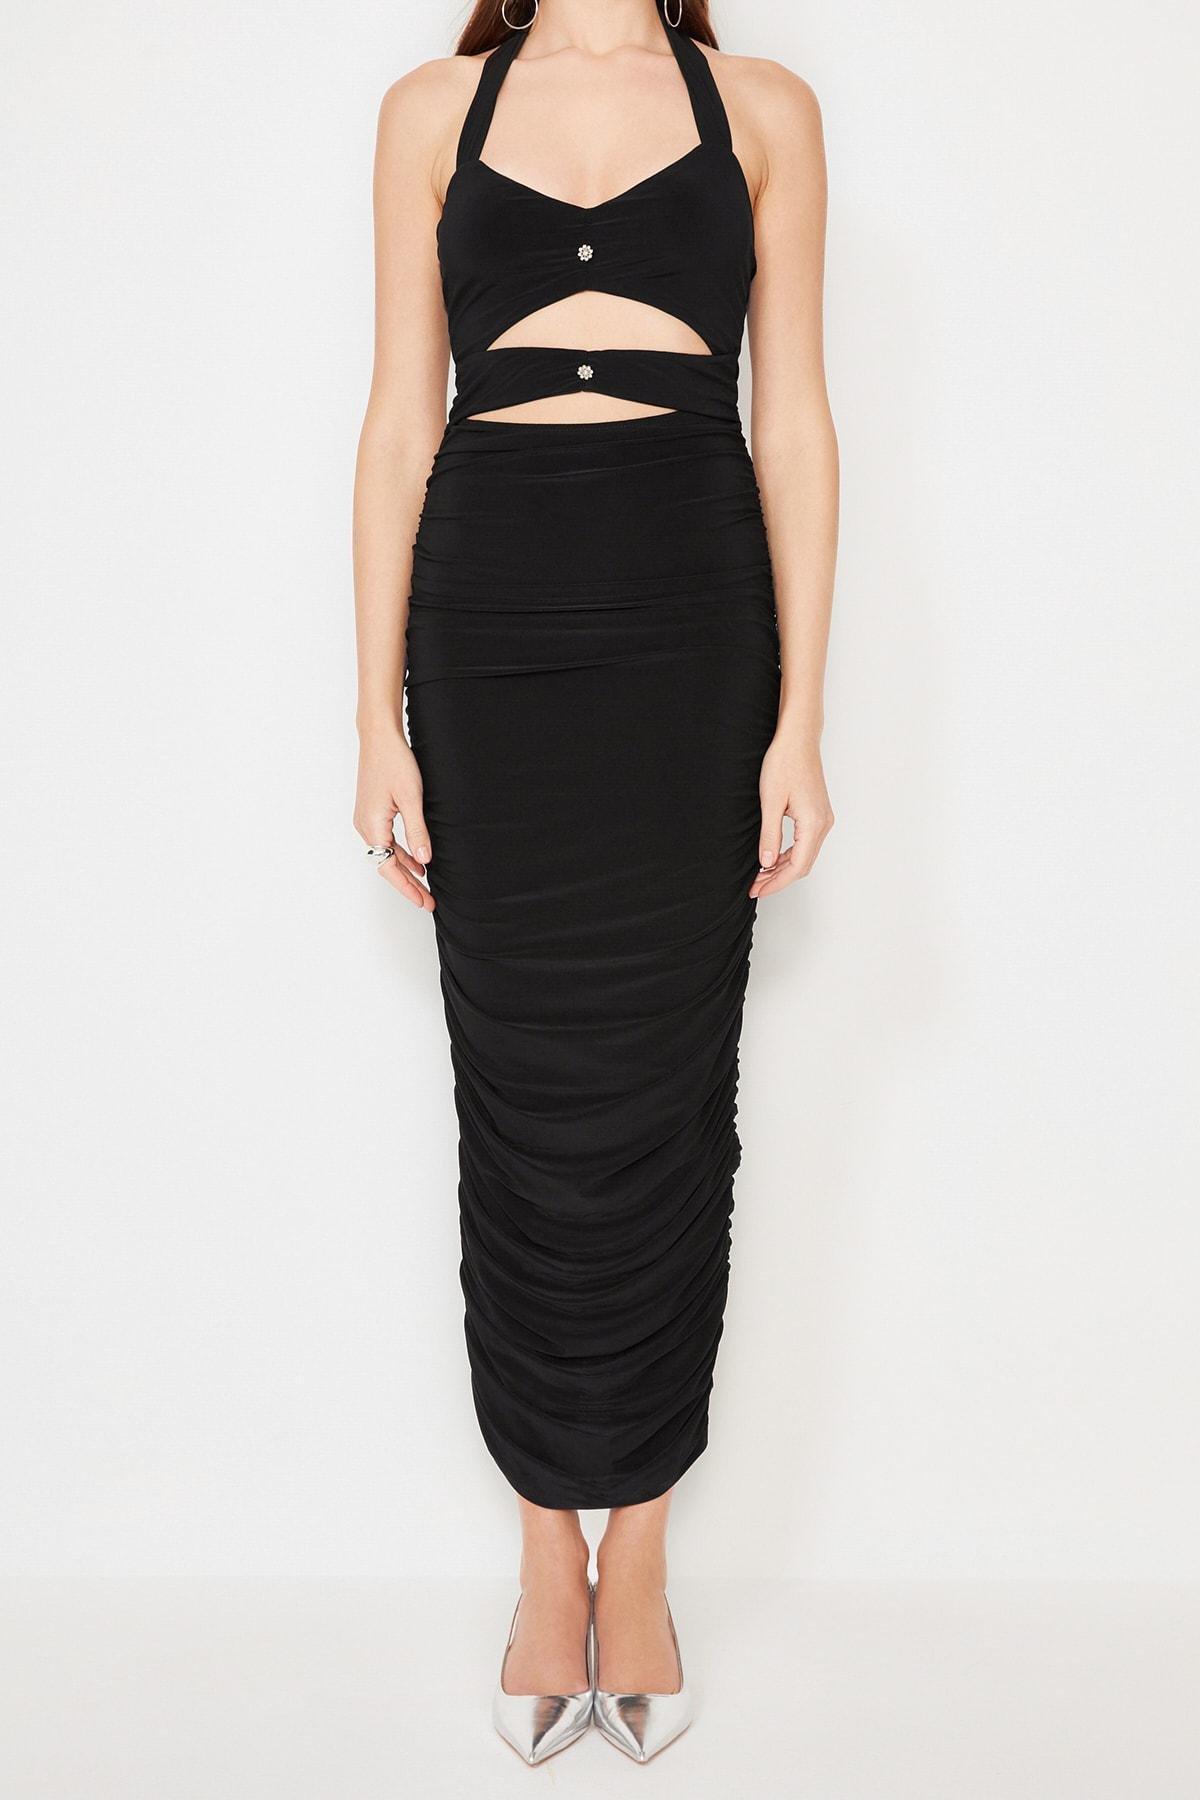 Trendyol - Black Detailed Dress